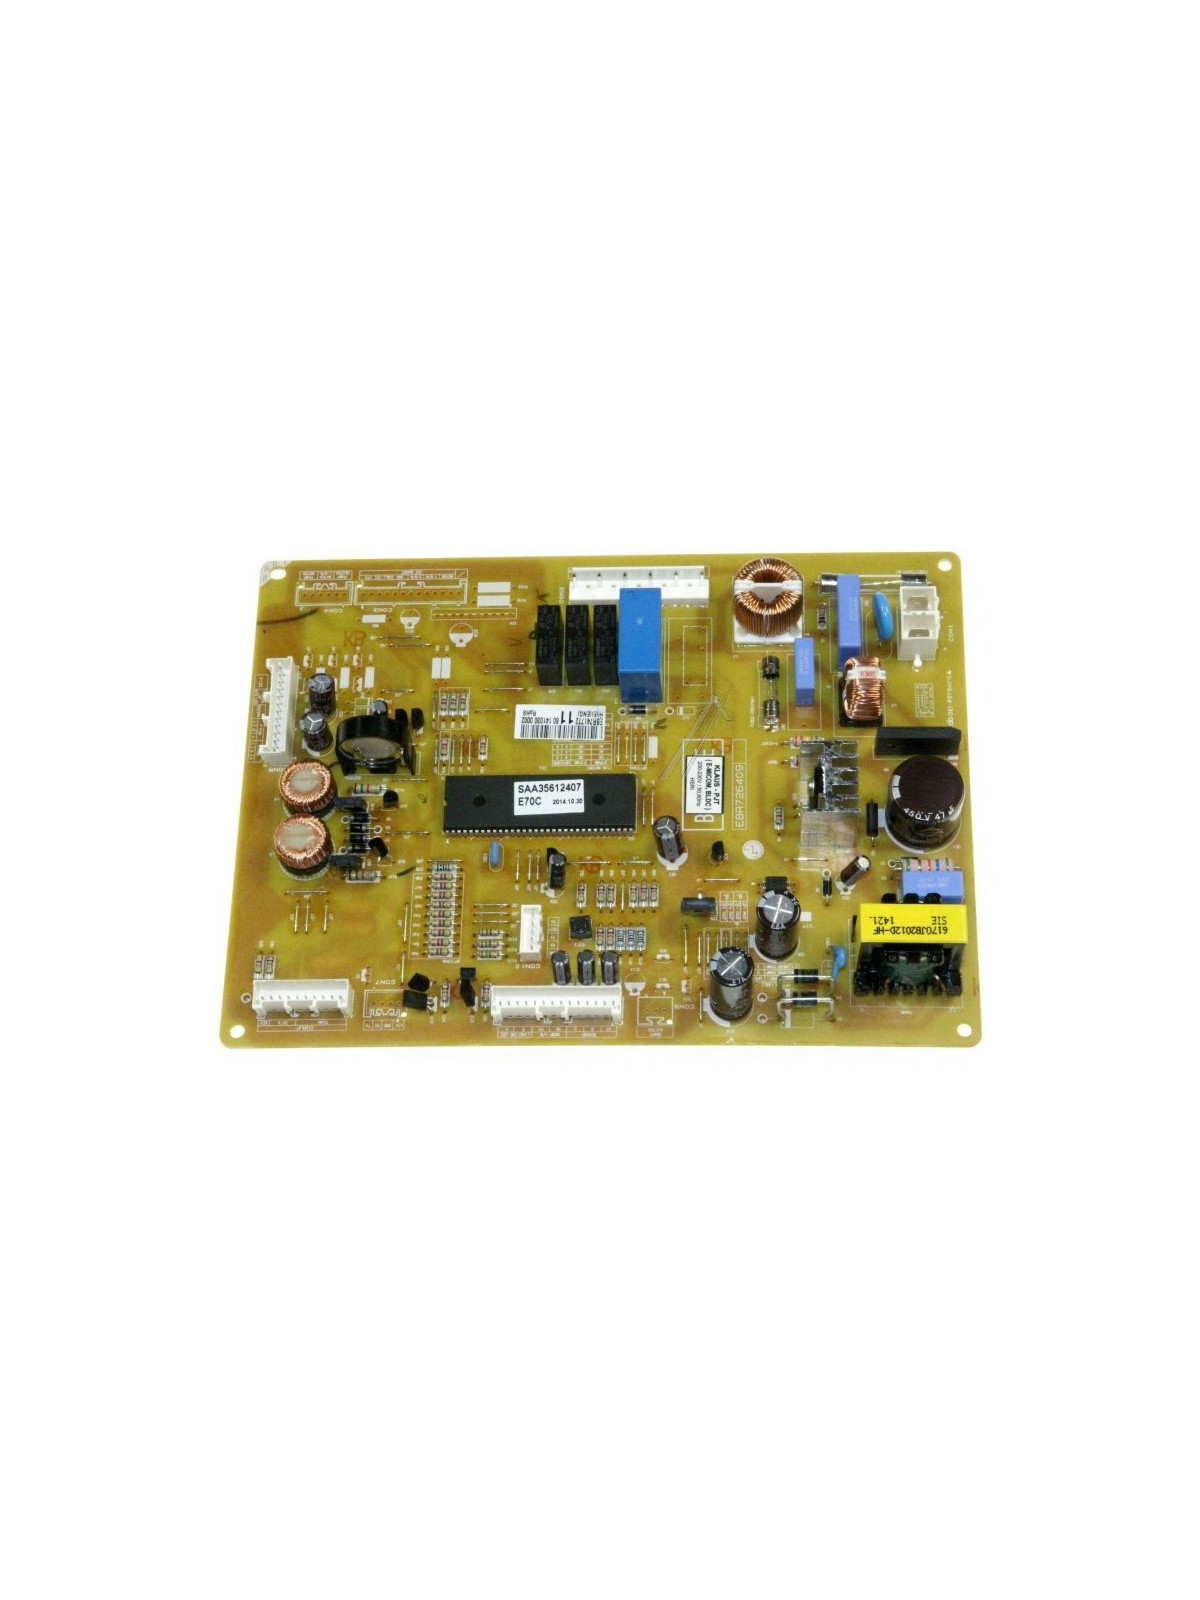 Platine principale LG GRF7835AC - Réfrigérateur